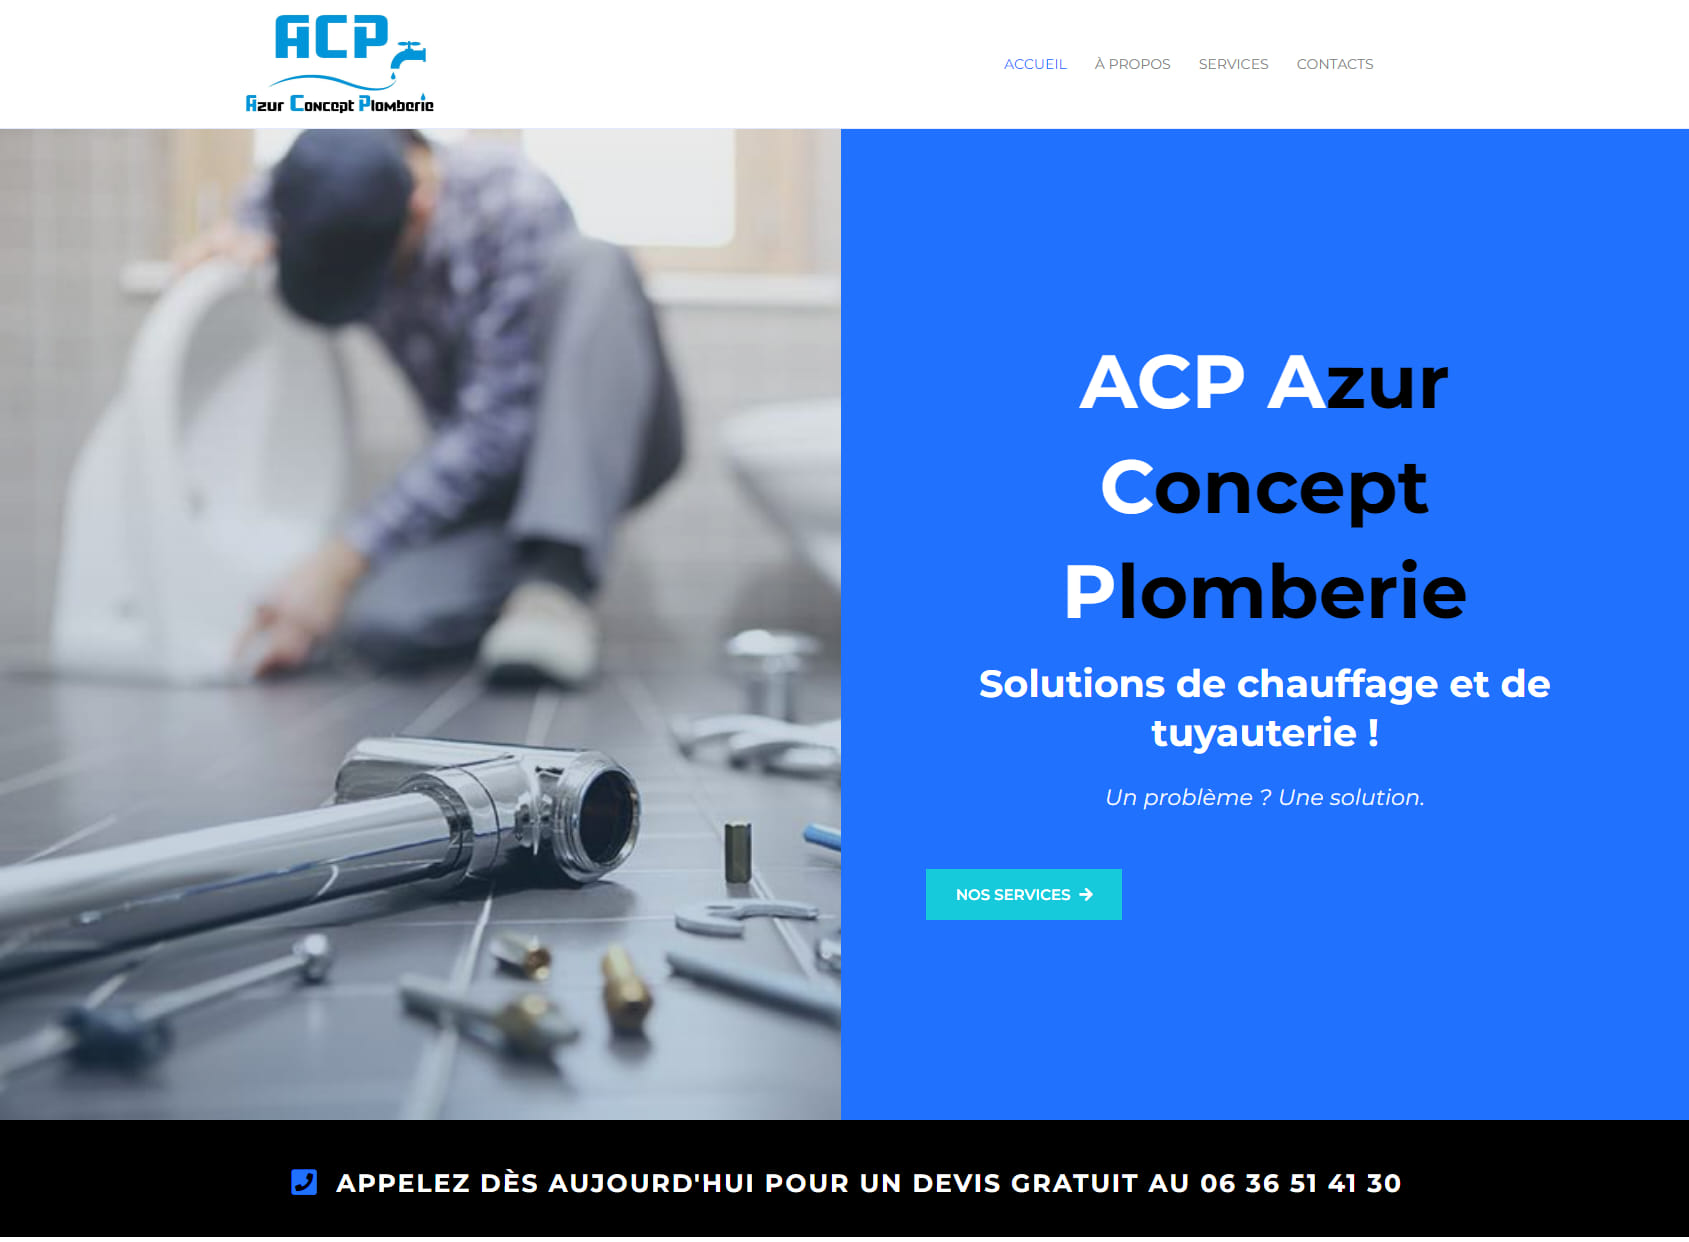 ACP - Azur Concept Plomberie